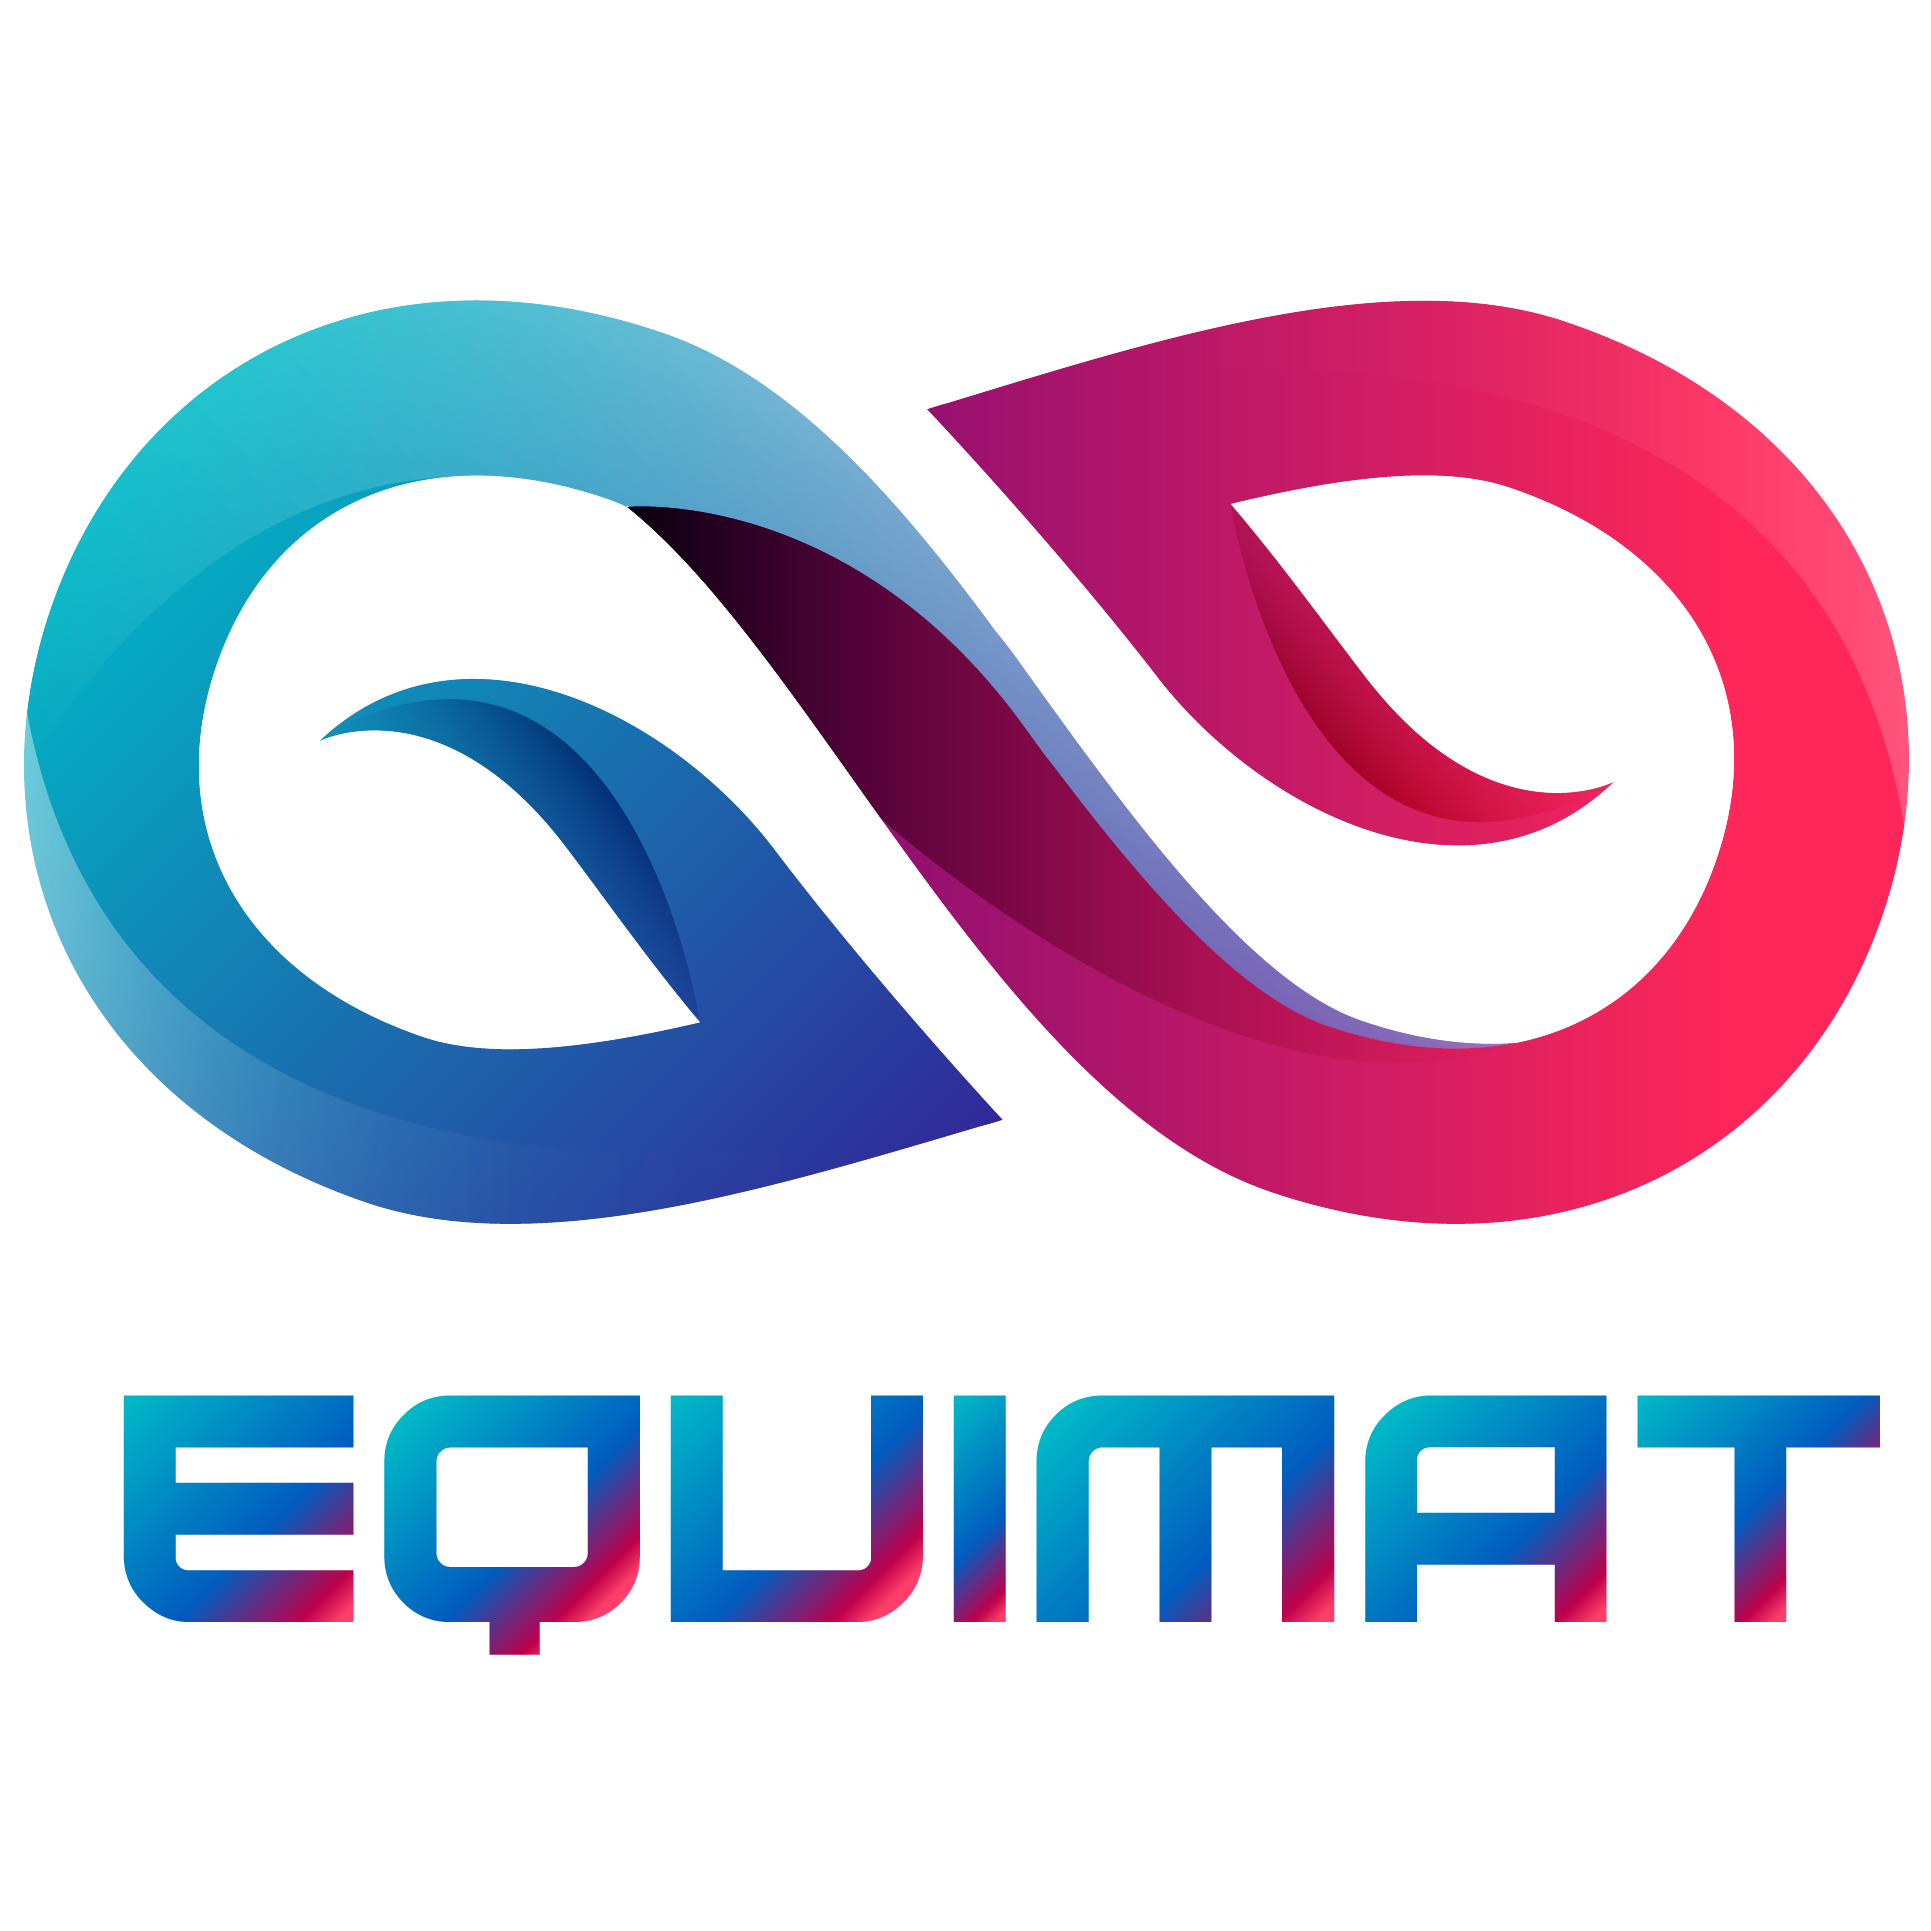 Logo EQUIMAT